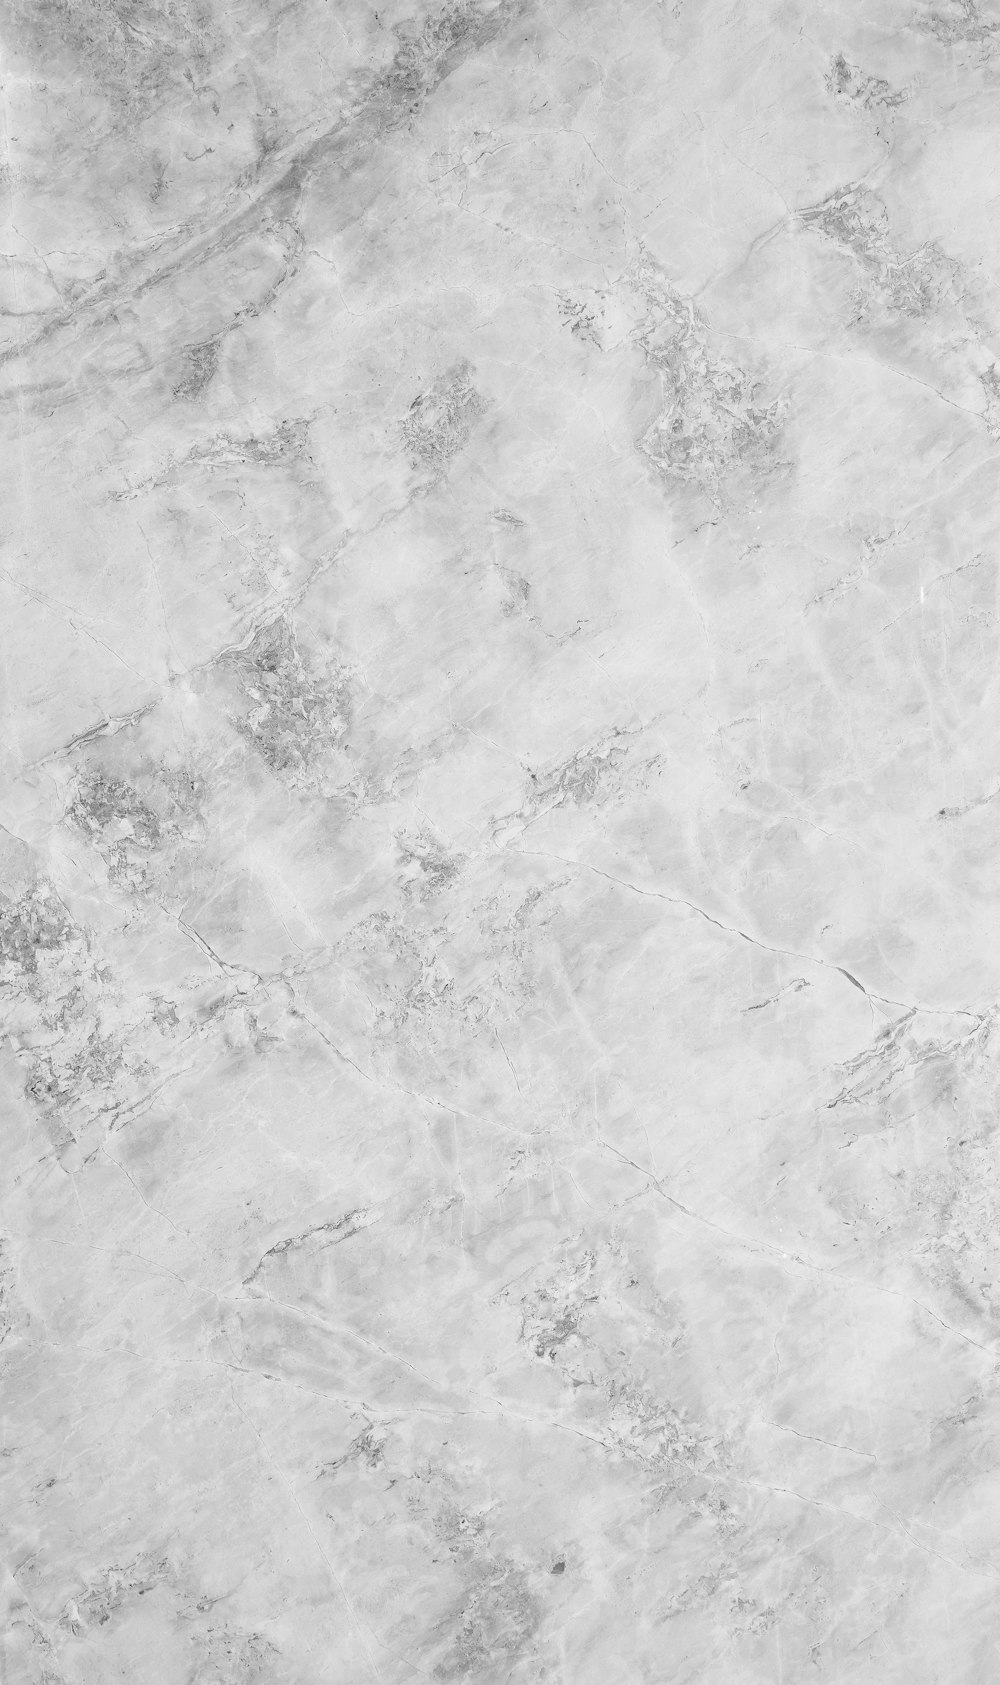 大理石の表面の白黒写真